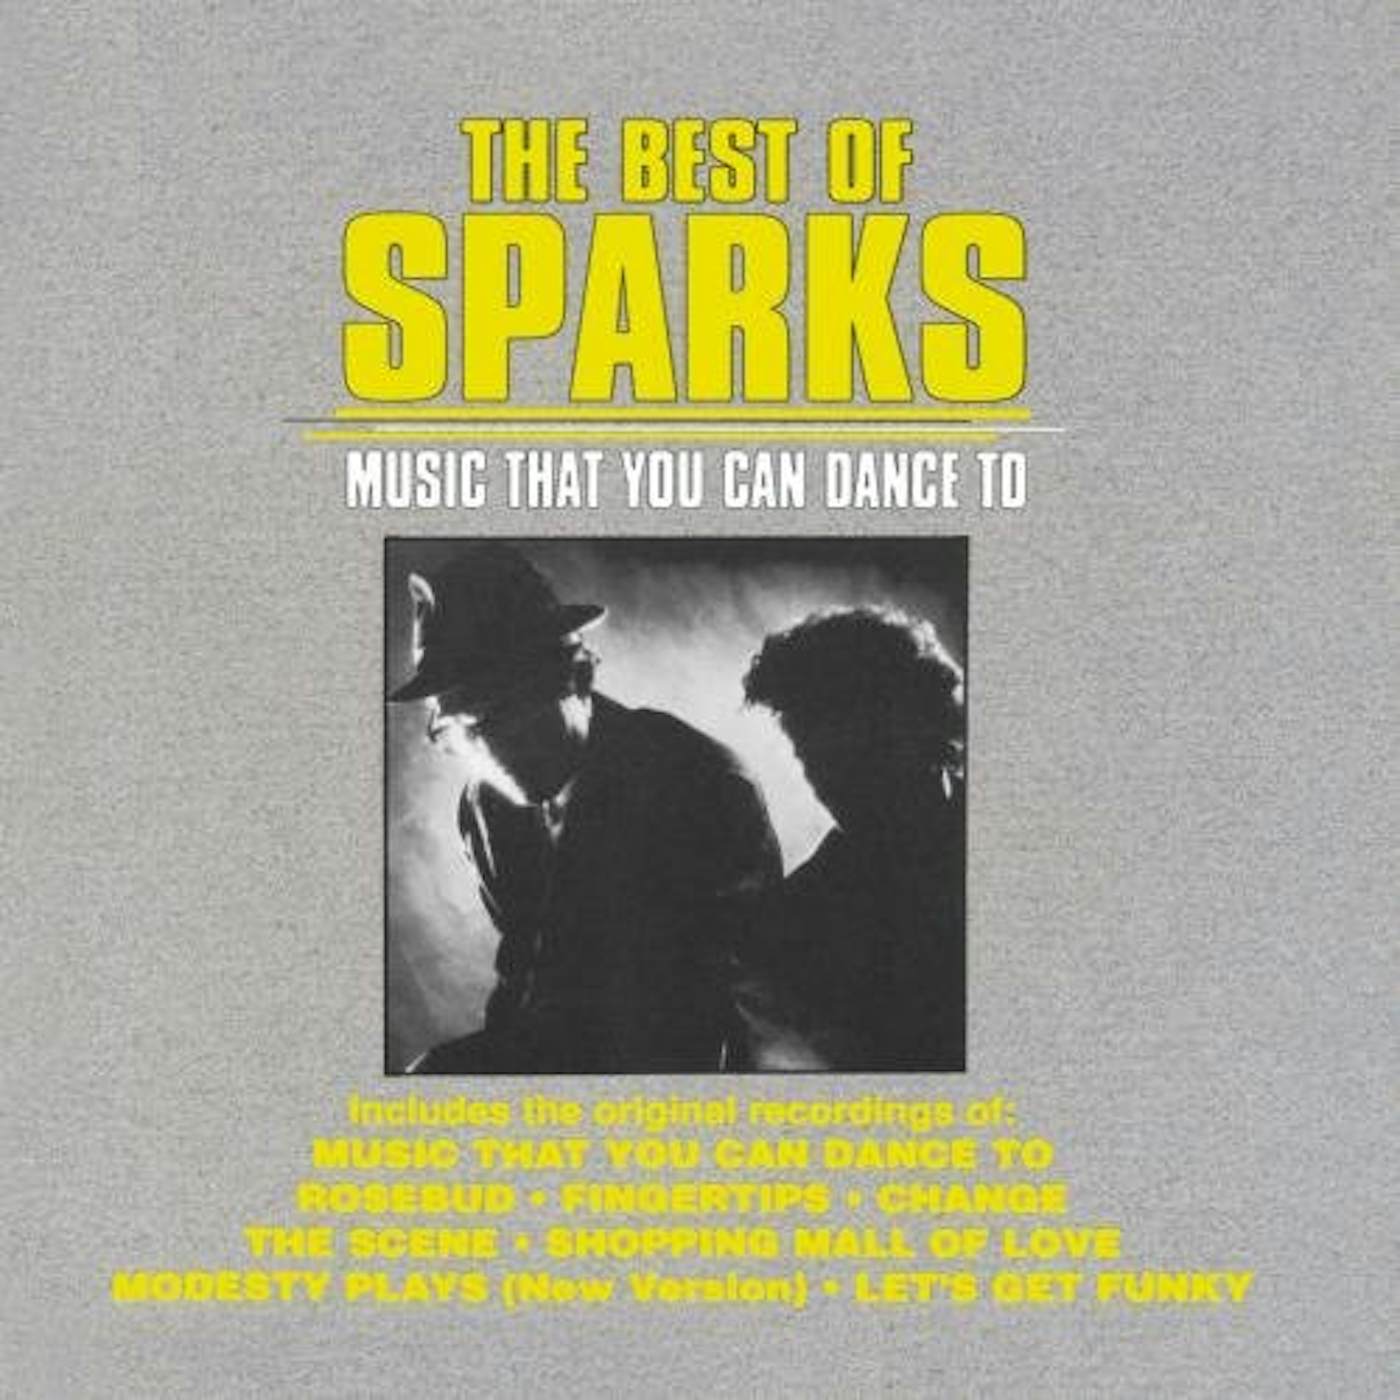 Sparks BEST OF CD